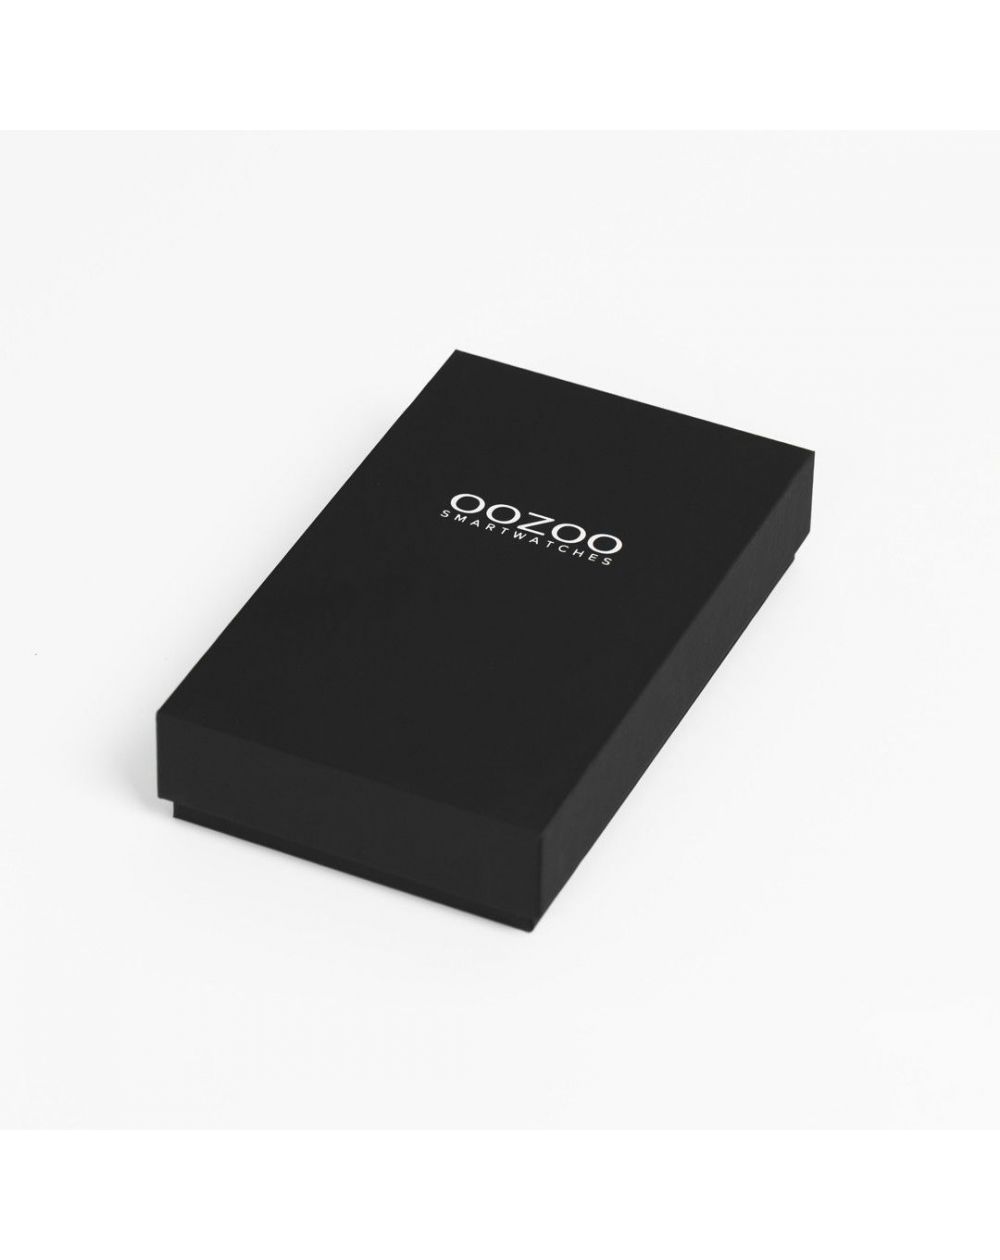 Montre Oozoo Q00307 - Smartwatch - Marque OOZOO - Livraison gratuite